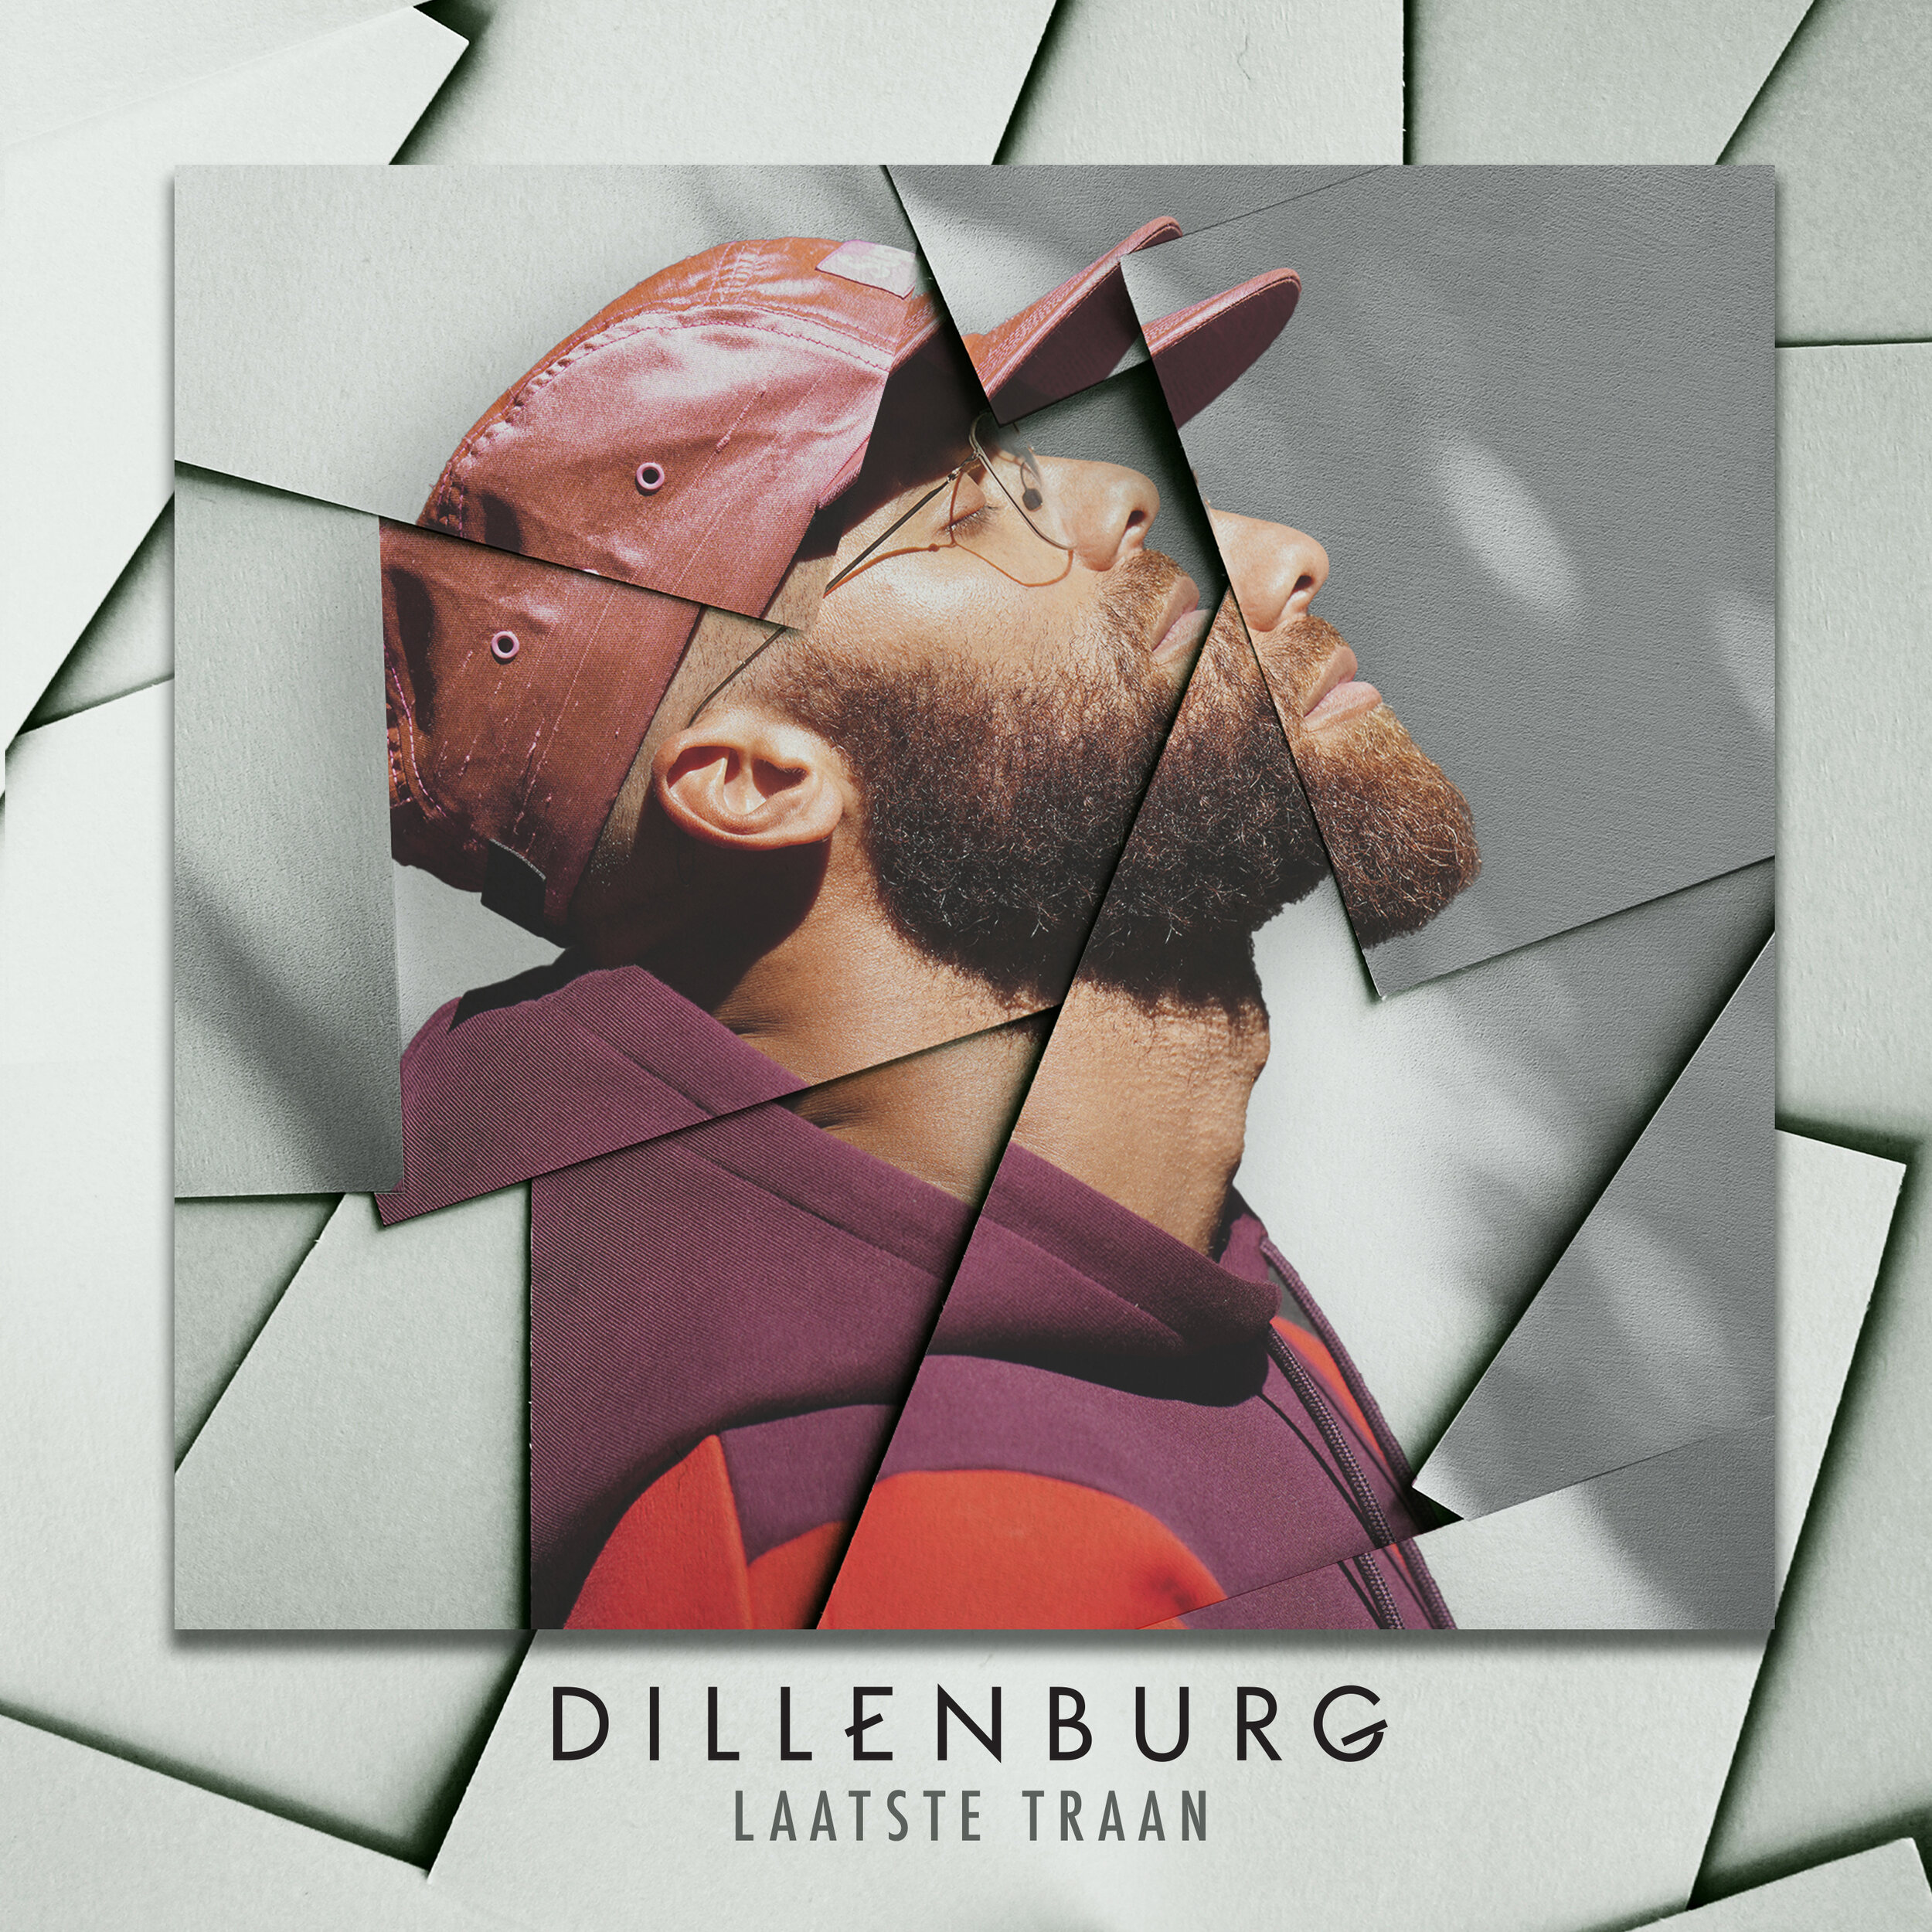 Dillenburg -Laatstetraan_EP1 copy kopie.jpg